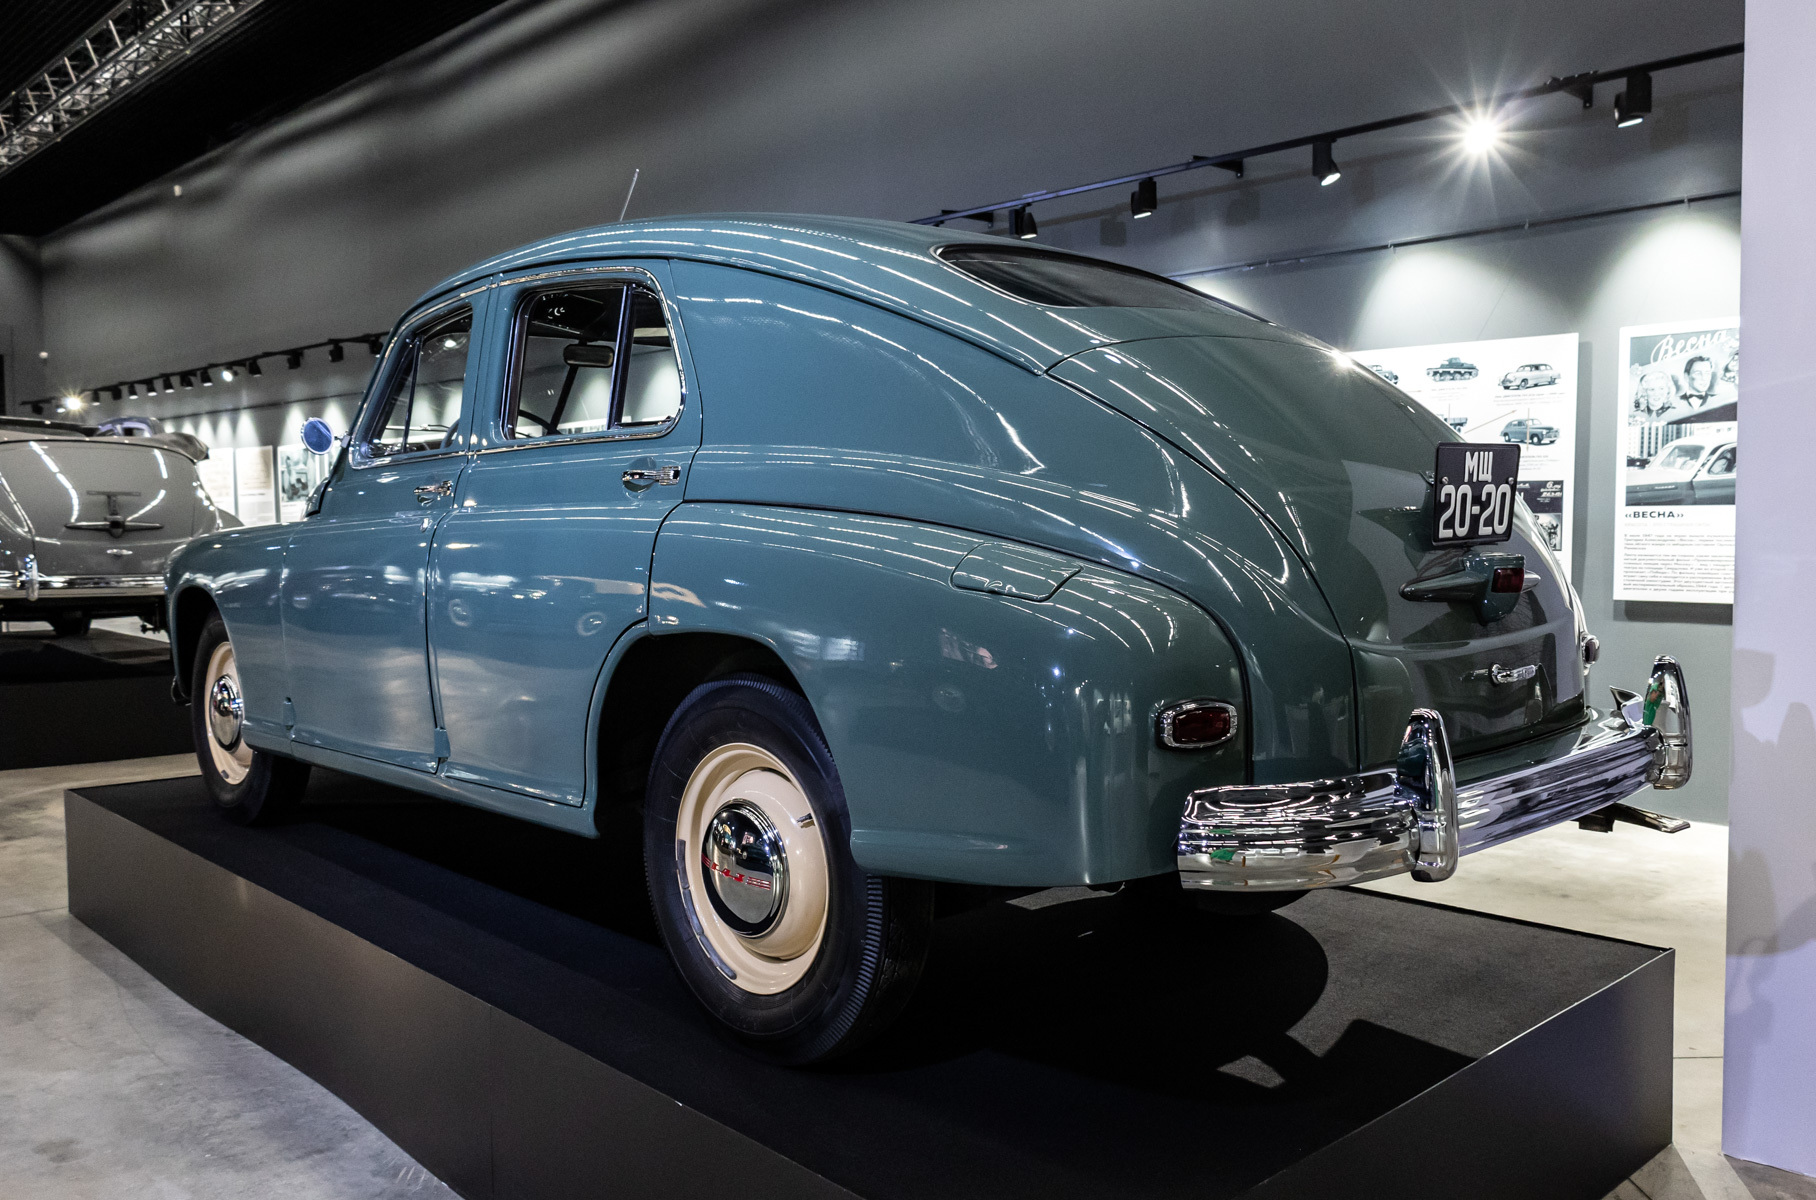 Проектирование модели началось в 1939 году. По одной из версий, конструкторы были вдохновлены моделью Opel Kapitan 1938 года с обтекаемым несущим кузовом, 2,5-литровым мотором и передней пружинной подвеской.